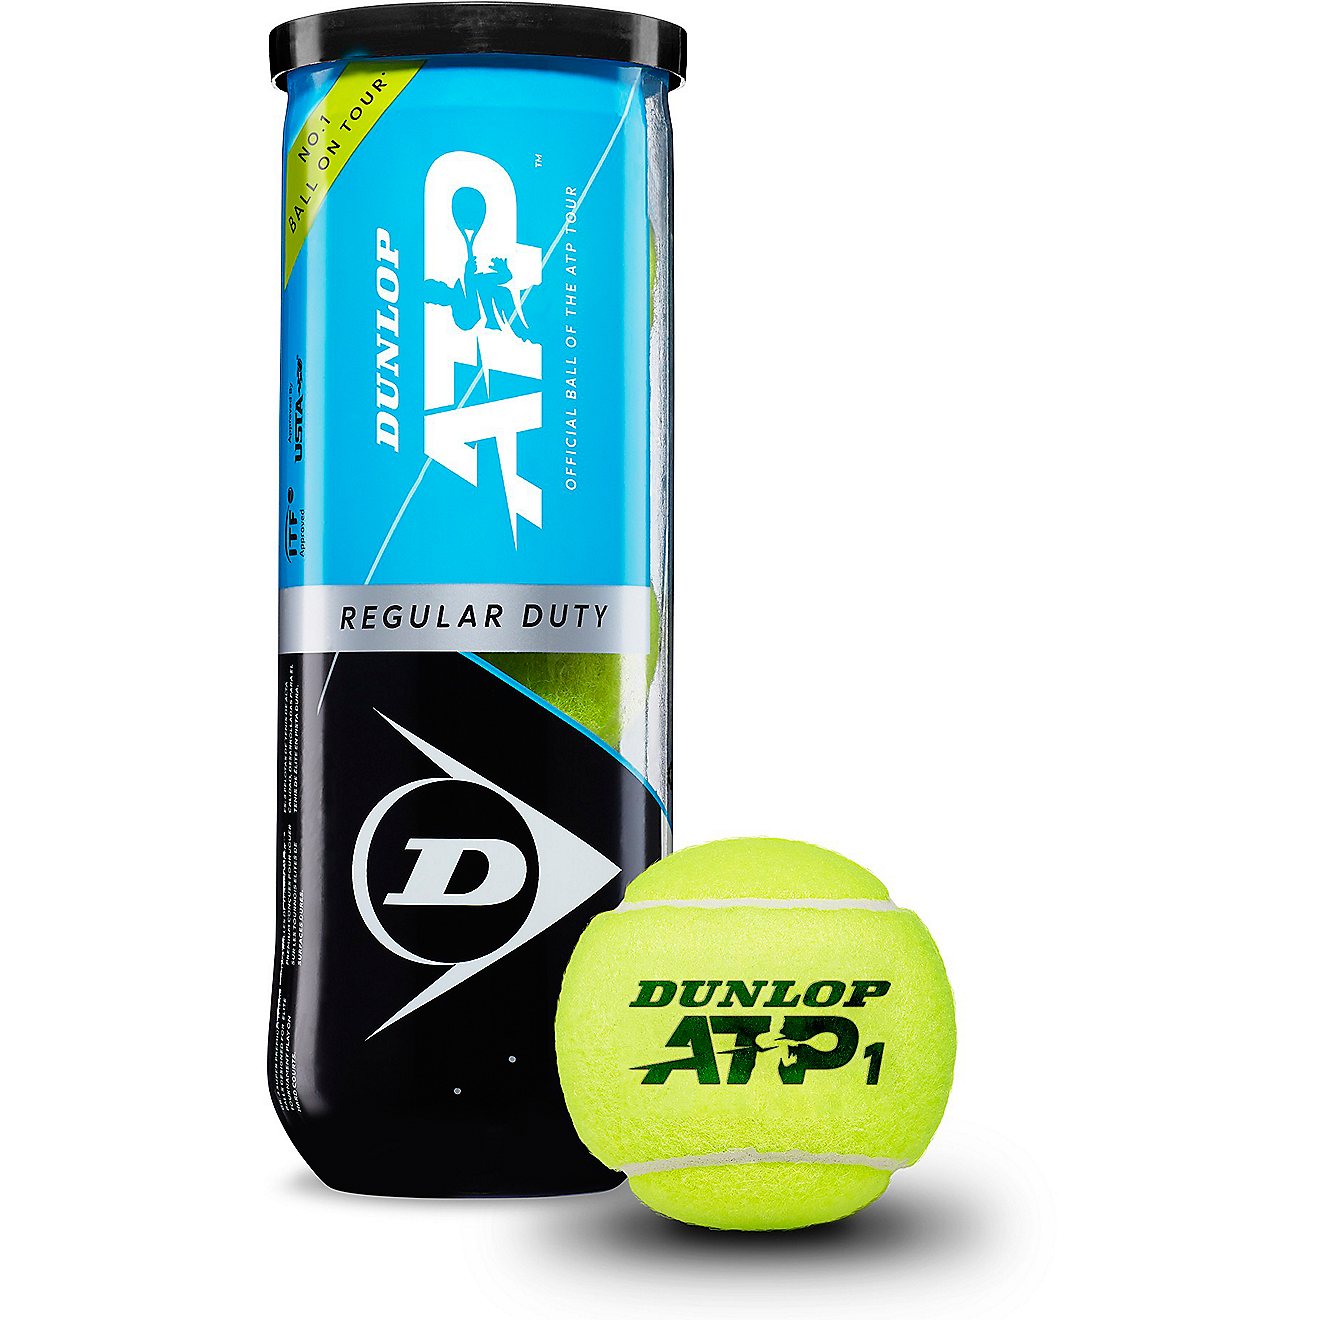 Dunlop ATP Tour Gold Regular Duty Tennis Balls Can 3-Pack                                                                        - view number 1